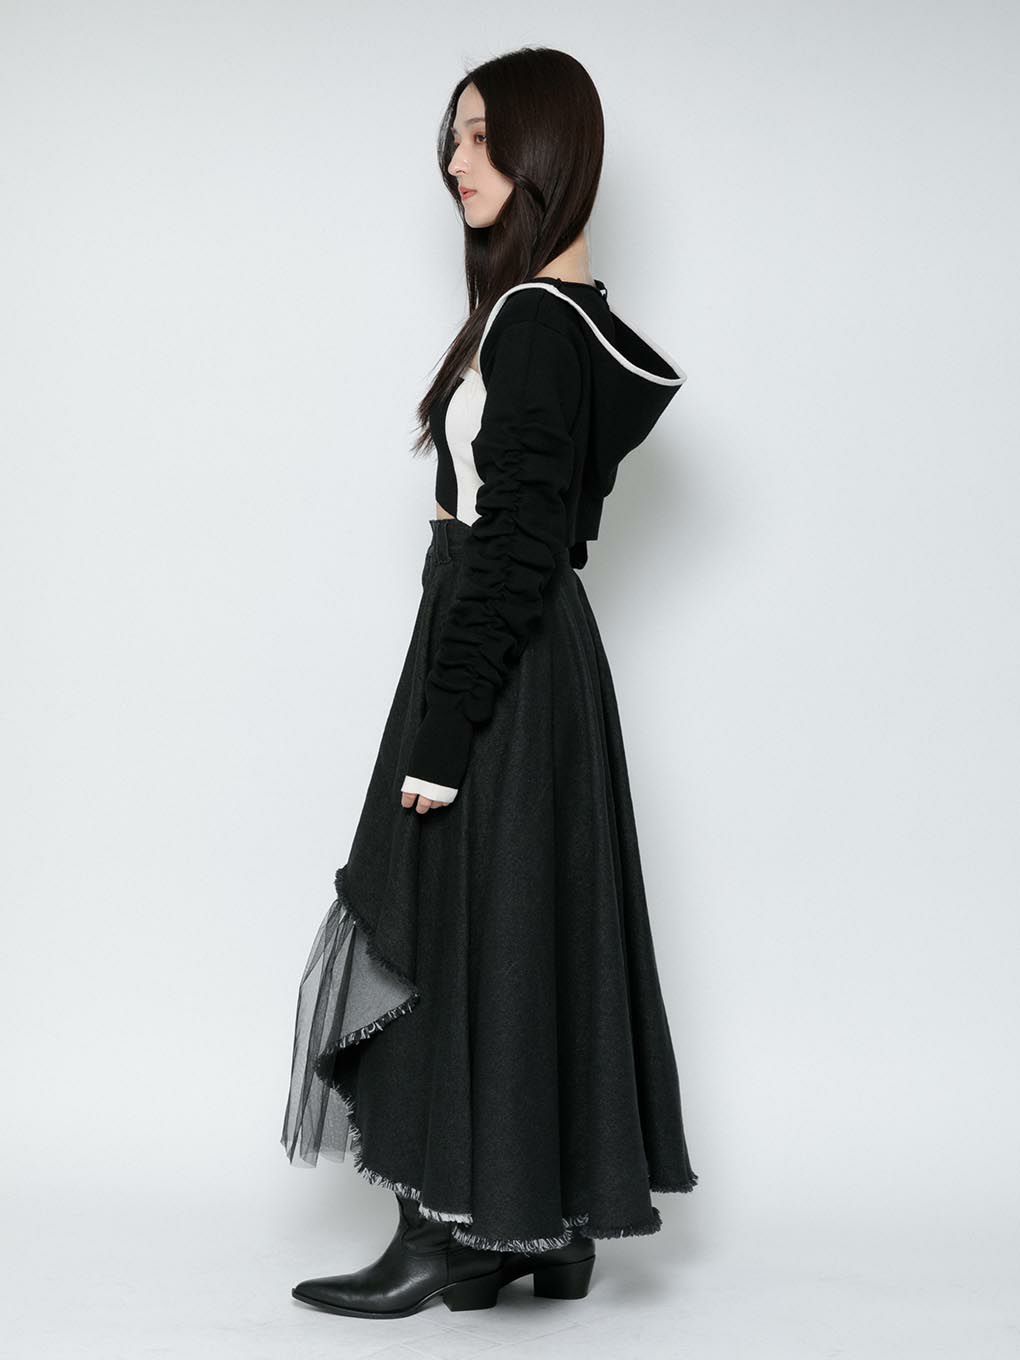 6,300円MELT THE LADY Medieval flare skirt